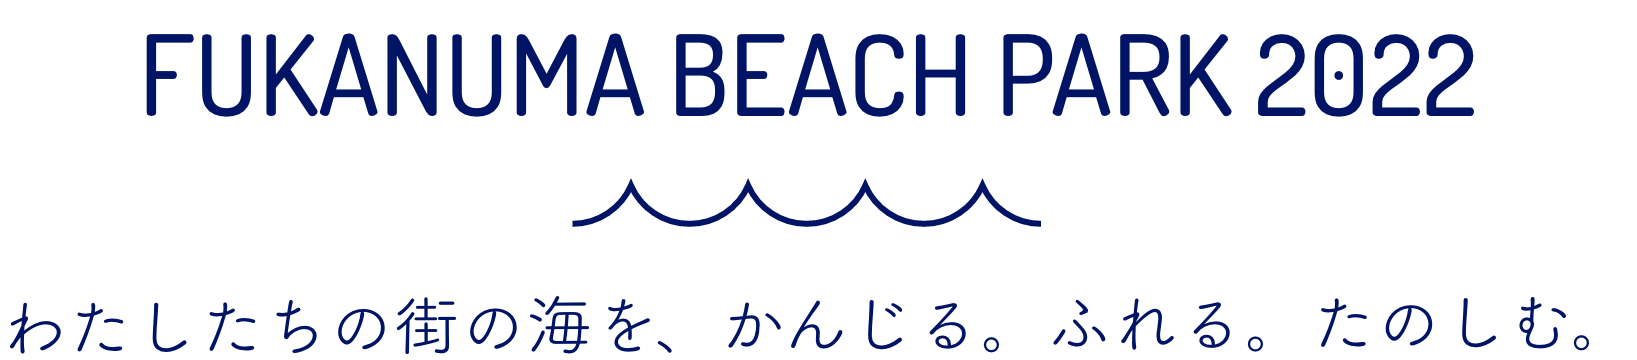 FUKANUMA BEACH PARK 2022 わたしたちの街の海を、かんじる。ふれる。たのしむ。